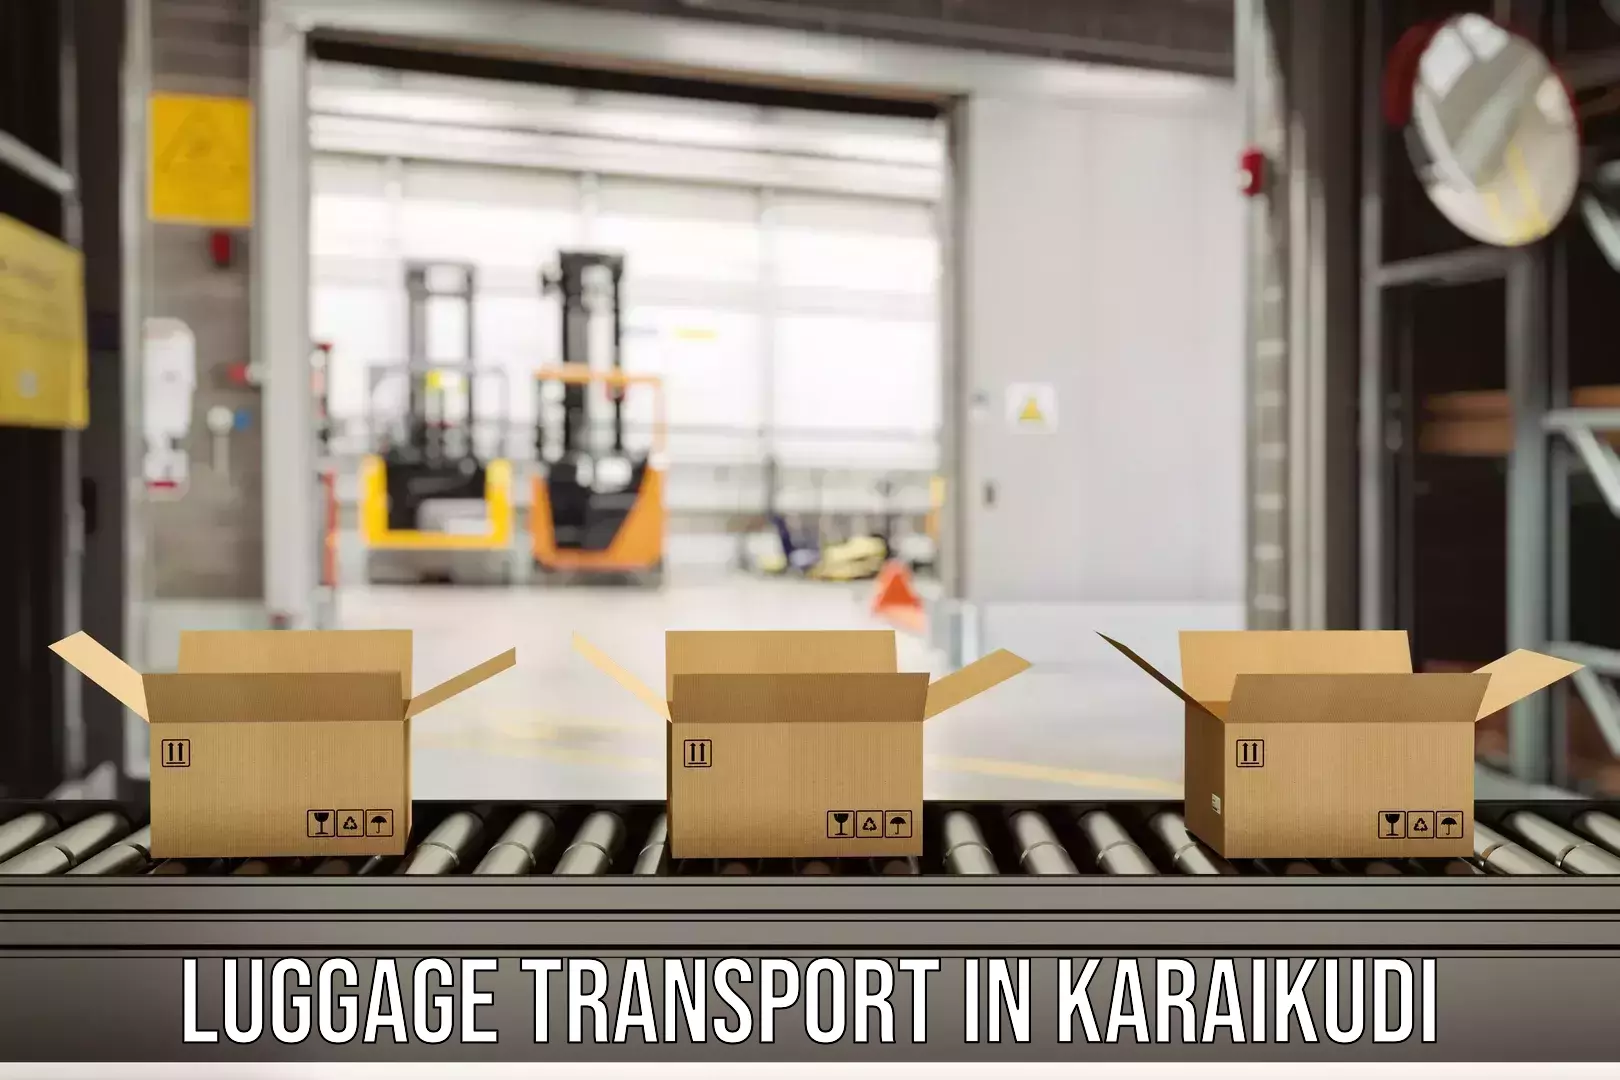 Luggage transport operations in Karaikudi